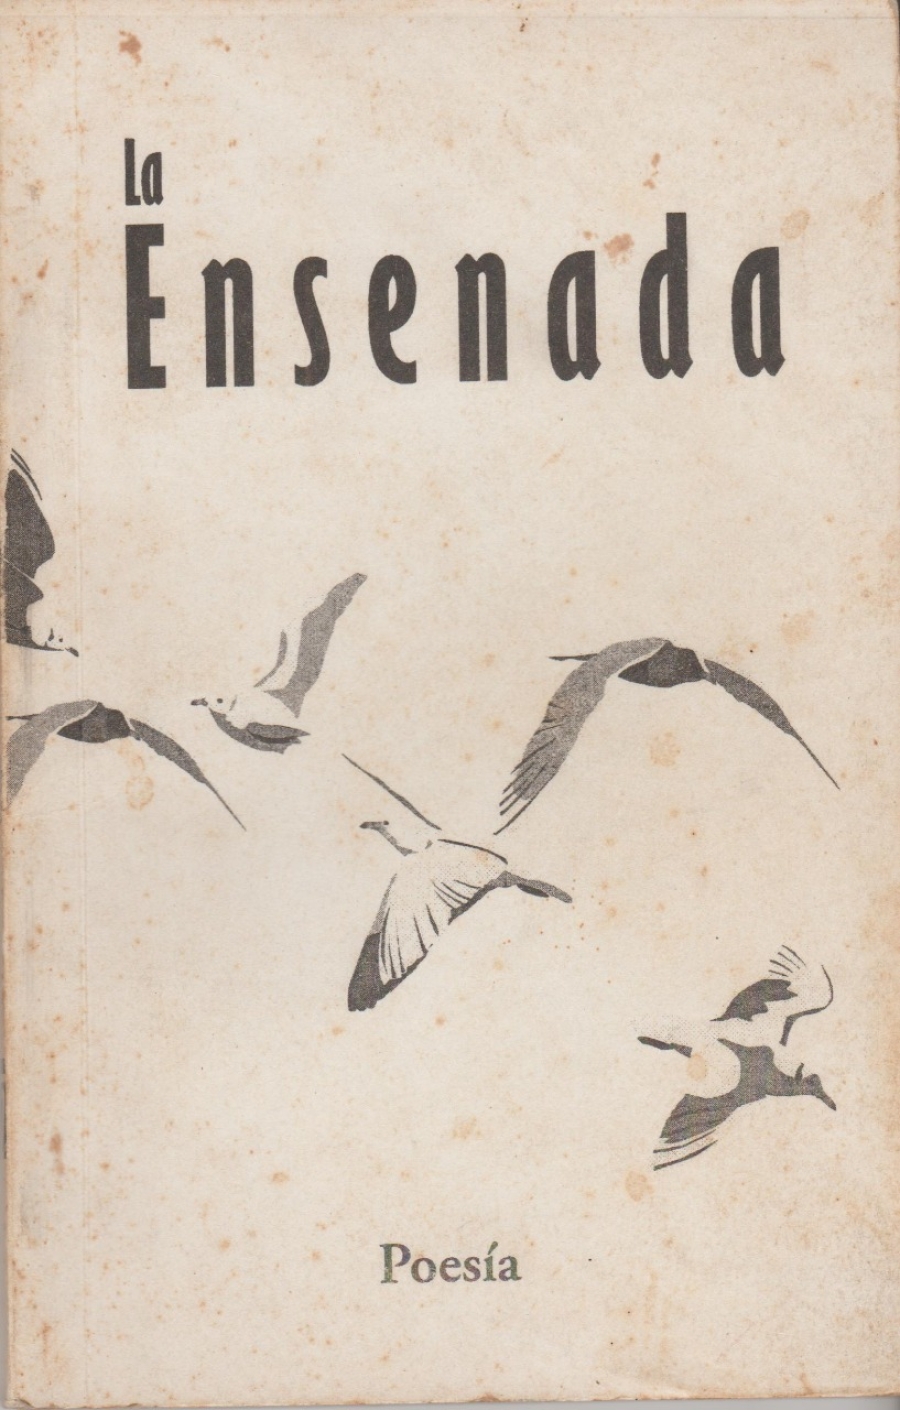 Apuntes escritos de prisa (y más tarde revisados)  para celebrar el veinte aniversario de La Ensenada